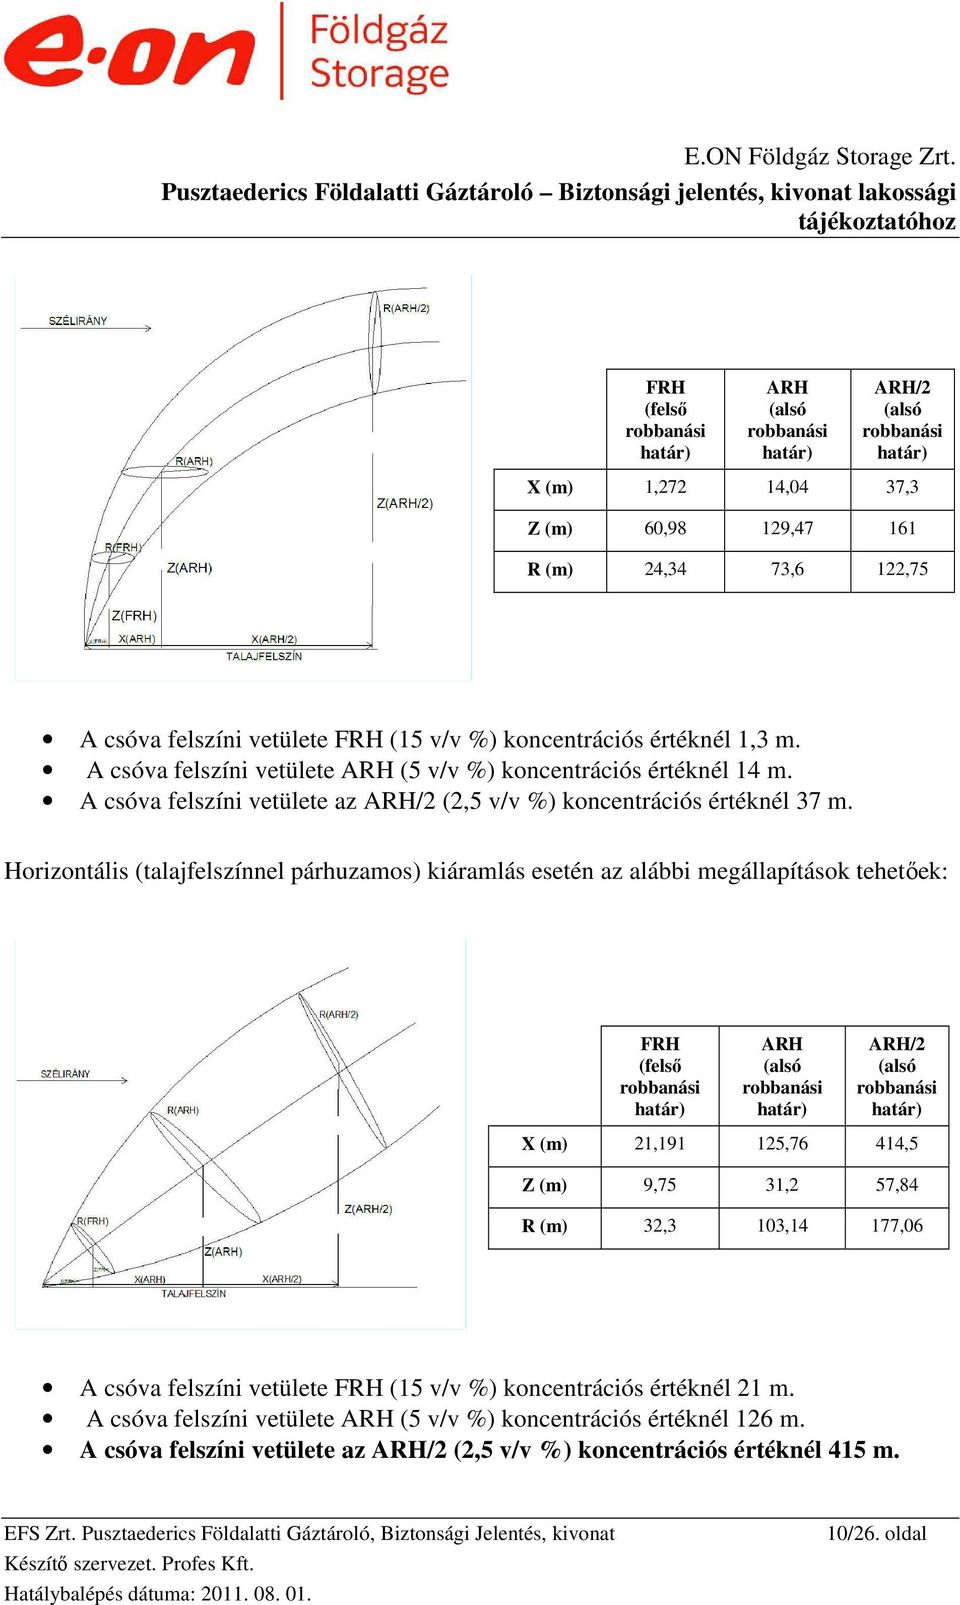 Horizontális (talajfelszínnel párhuzamos) kiáramlás esetén az alábbi megállapítások tehetıek: FRH (felsı robbanási határ) ARH (alsó robbanási határ) ARH/2 (alsó robbanási határ) X (m) 21,191 125,76